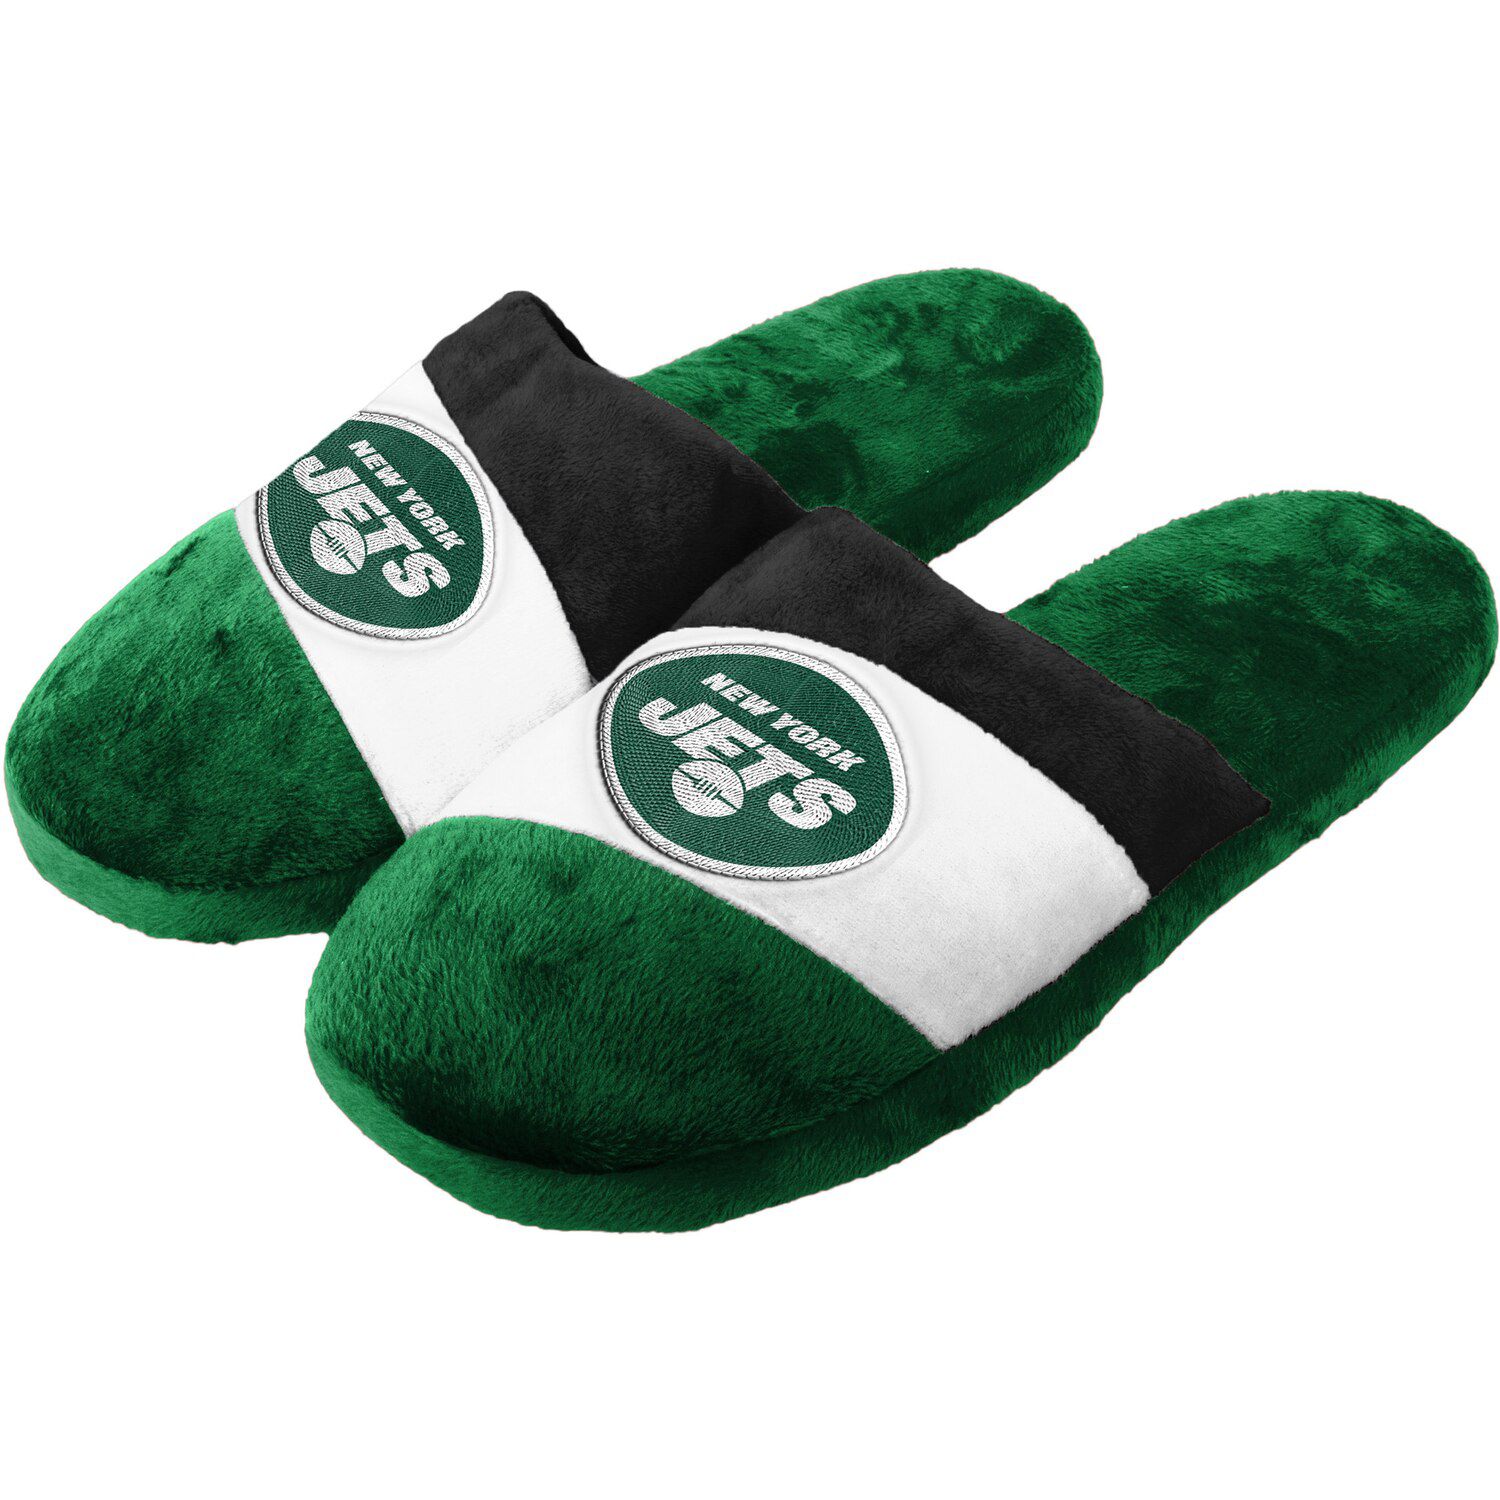 new slide slippers